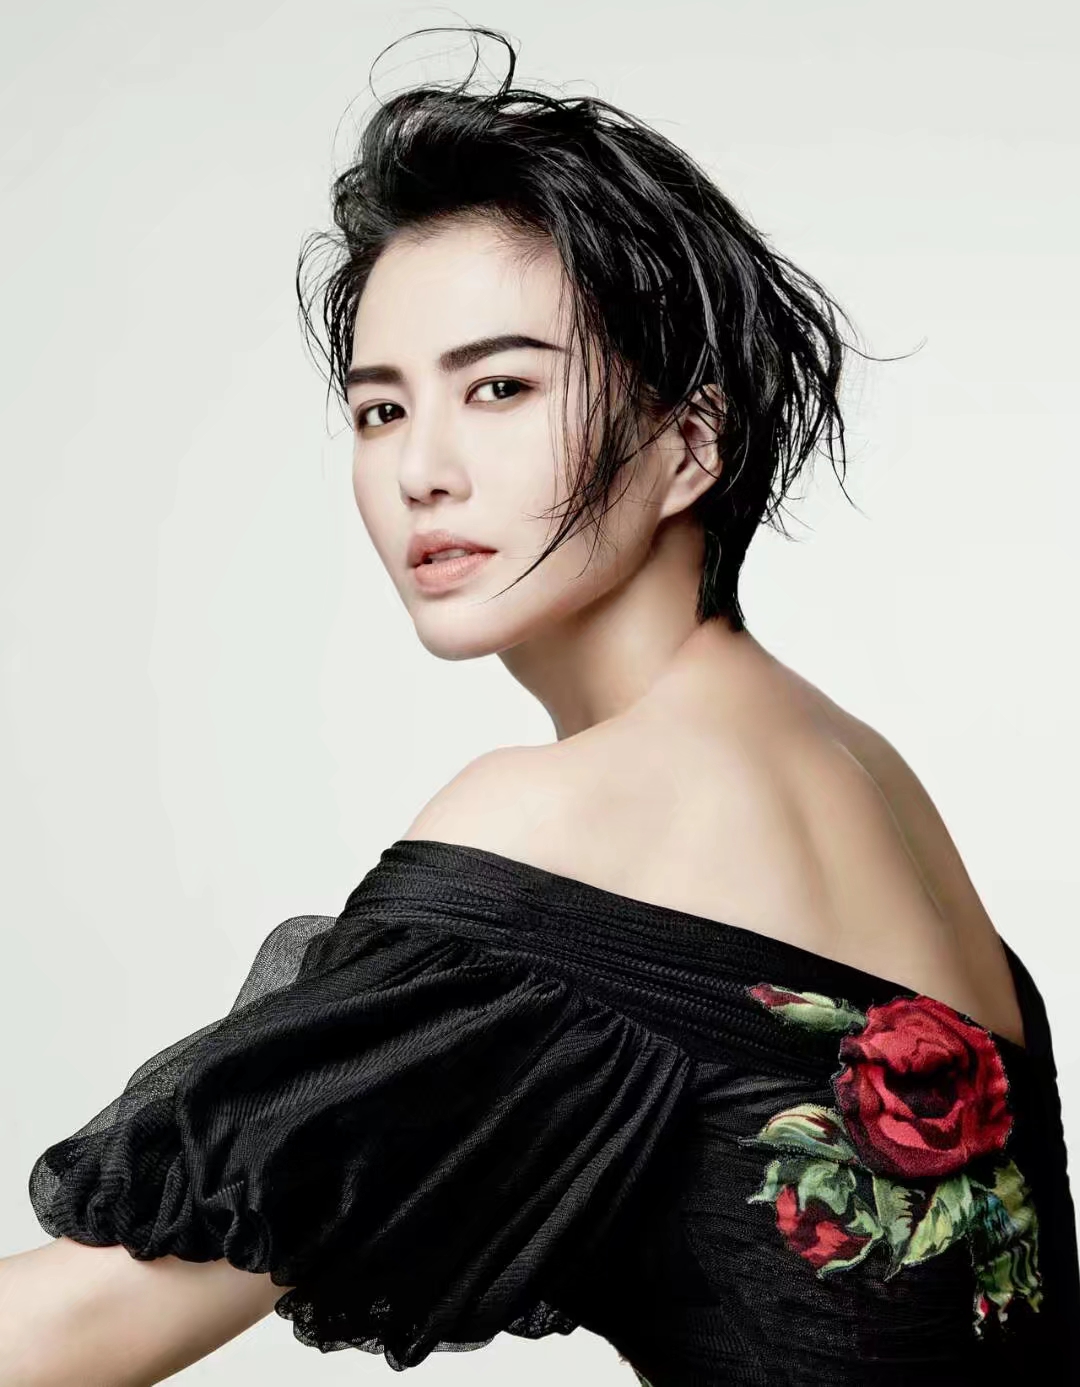 谭维维,1982年10月8日出生于四川自贡,中国内地女歌手.